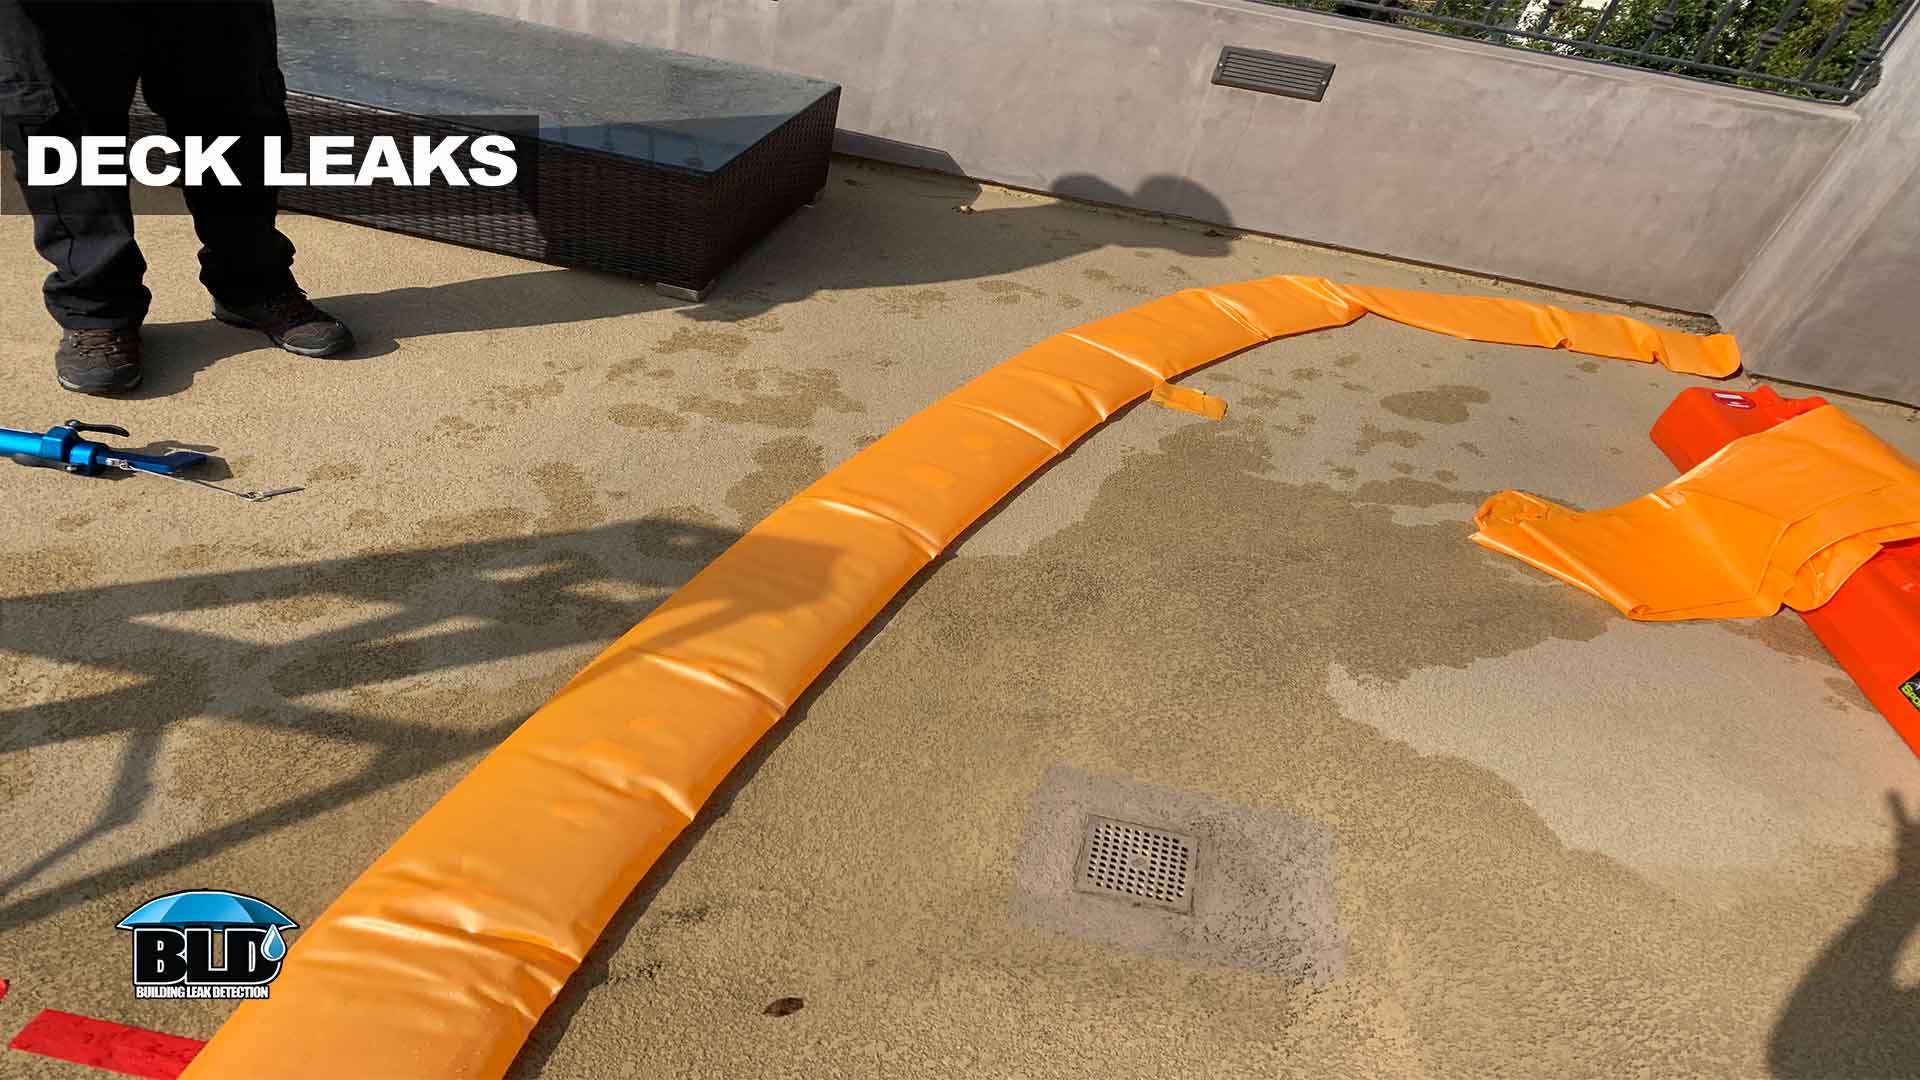 Deck leaks and rain leak detection in Los Angeles